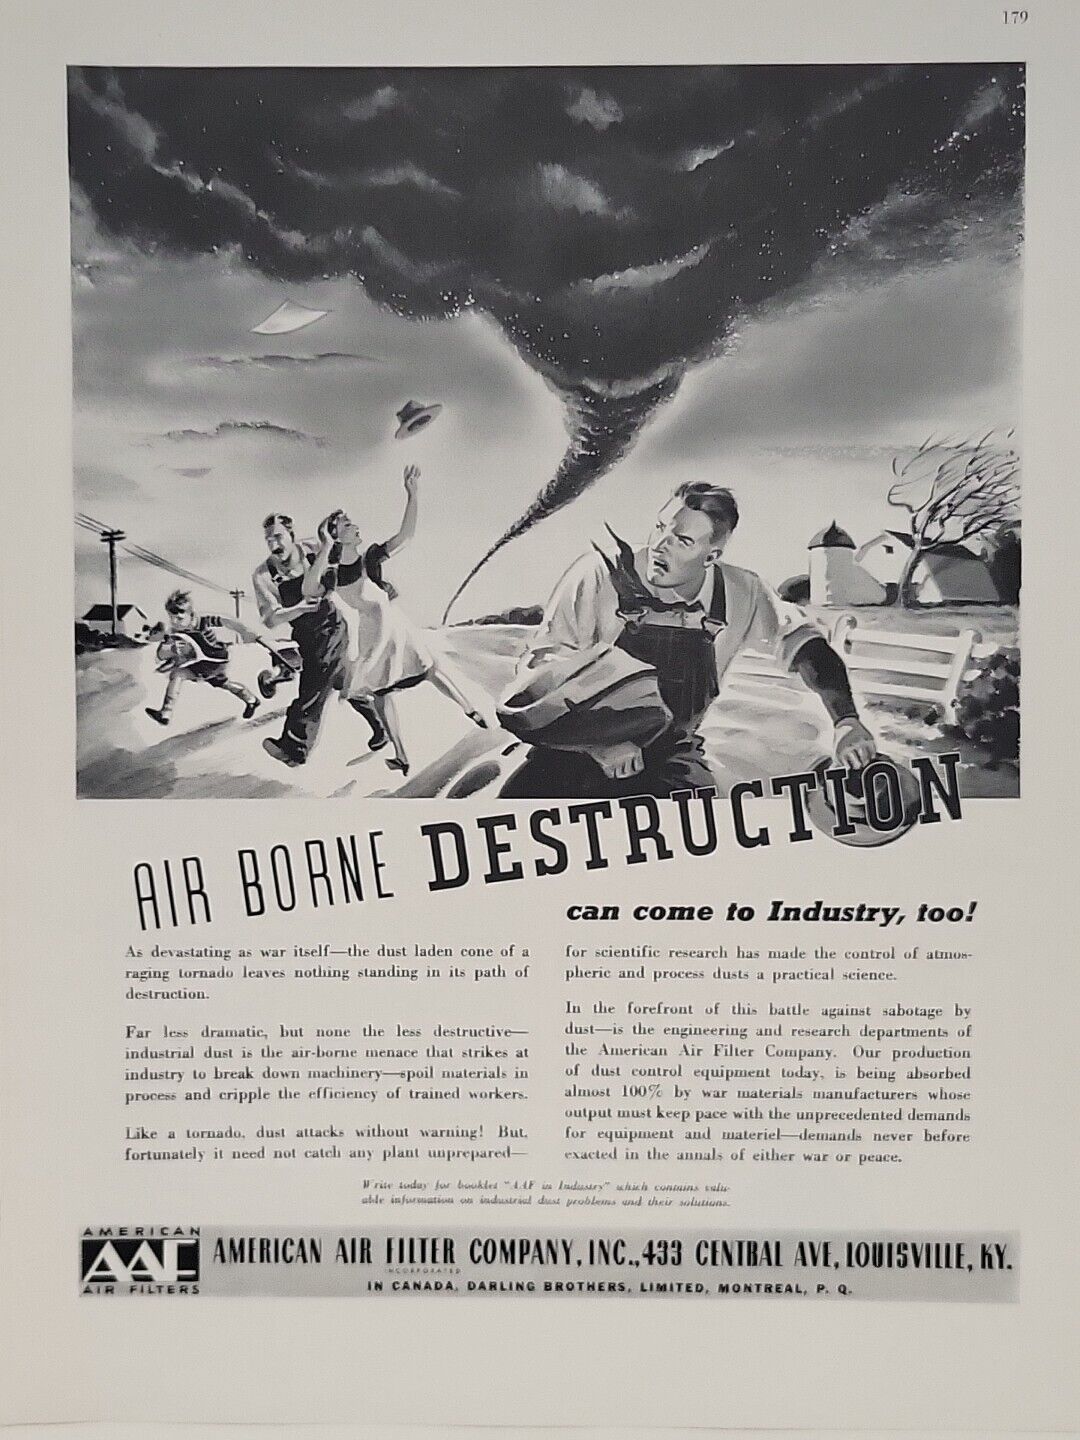 1942 American Air Filter Company Fortune WW2 Print Ad Q2 Tornado Farmers Boy